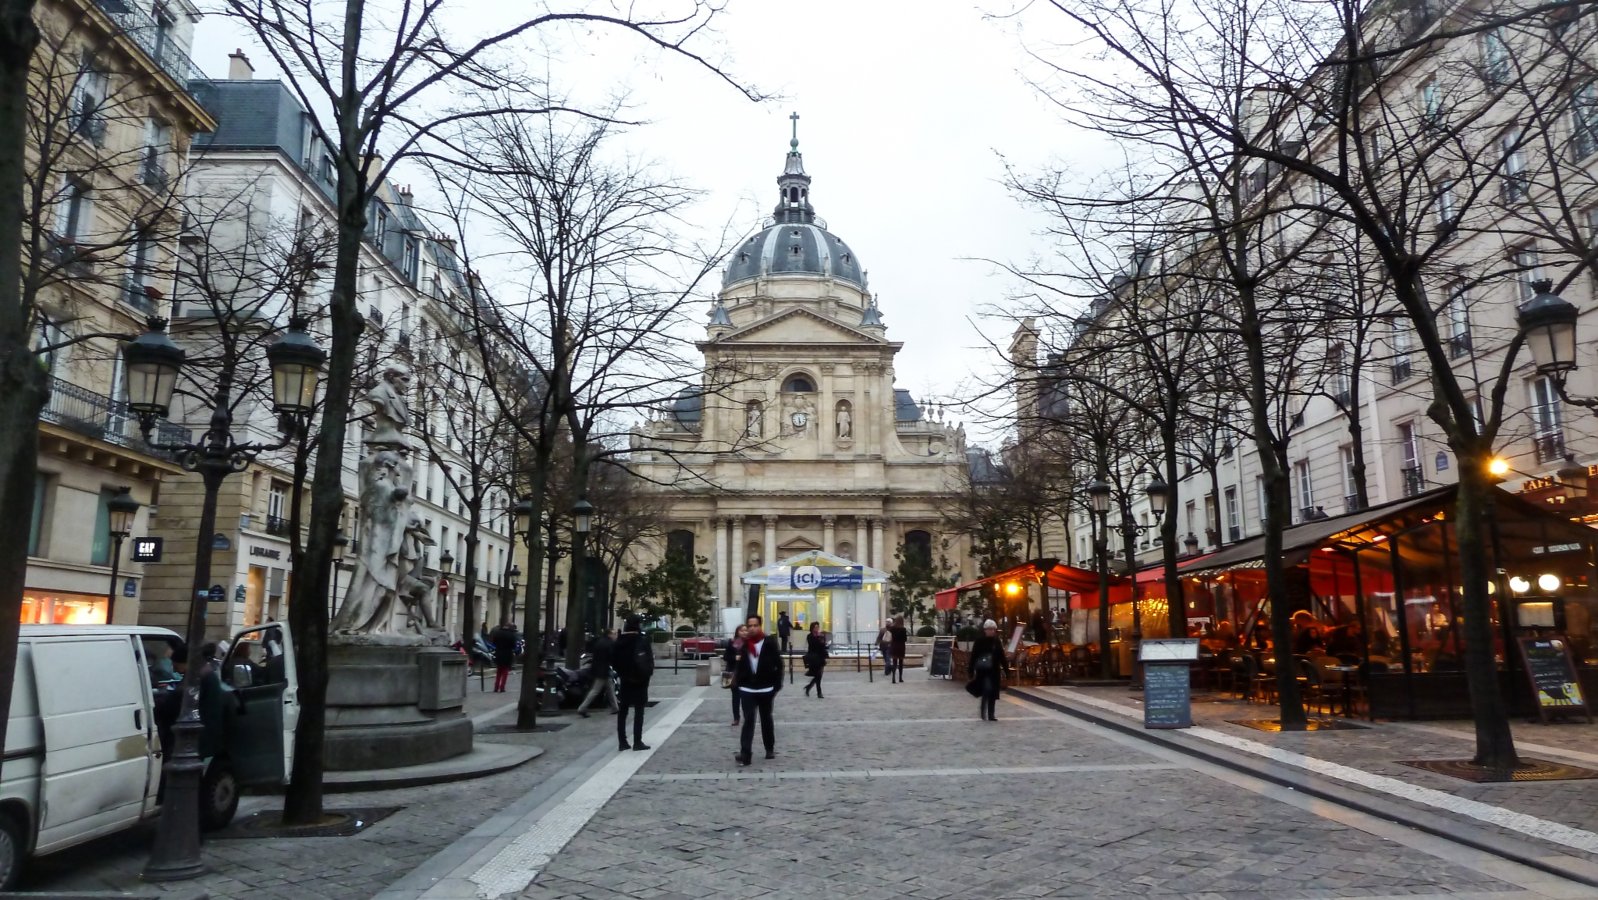 Place de la Sorbonne